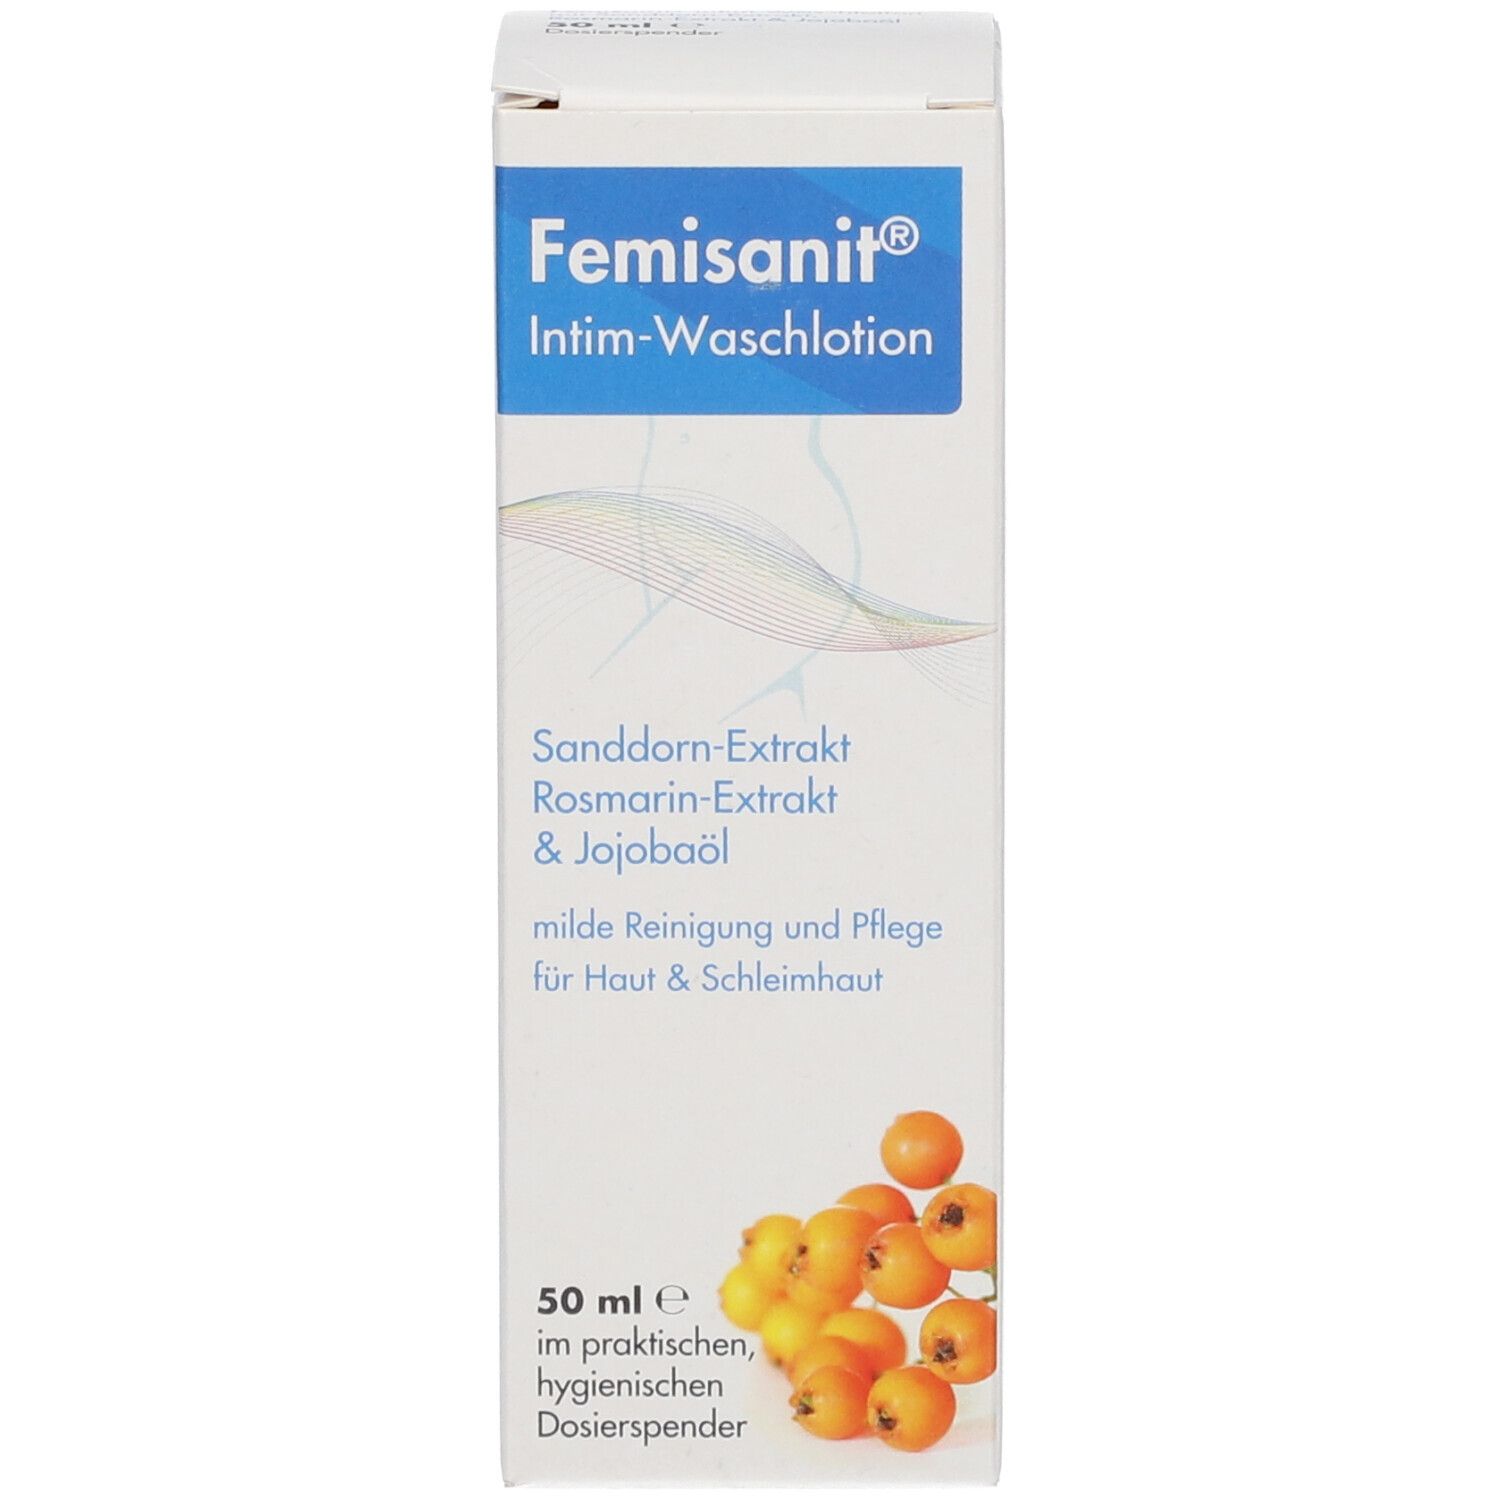 Femisanit® Intim-Waschlotion